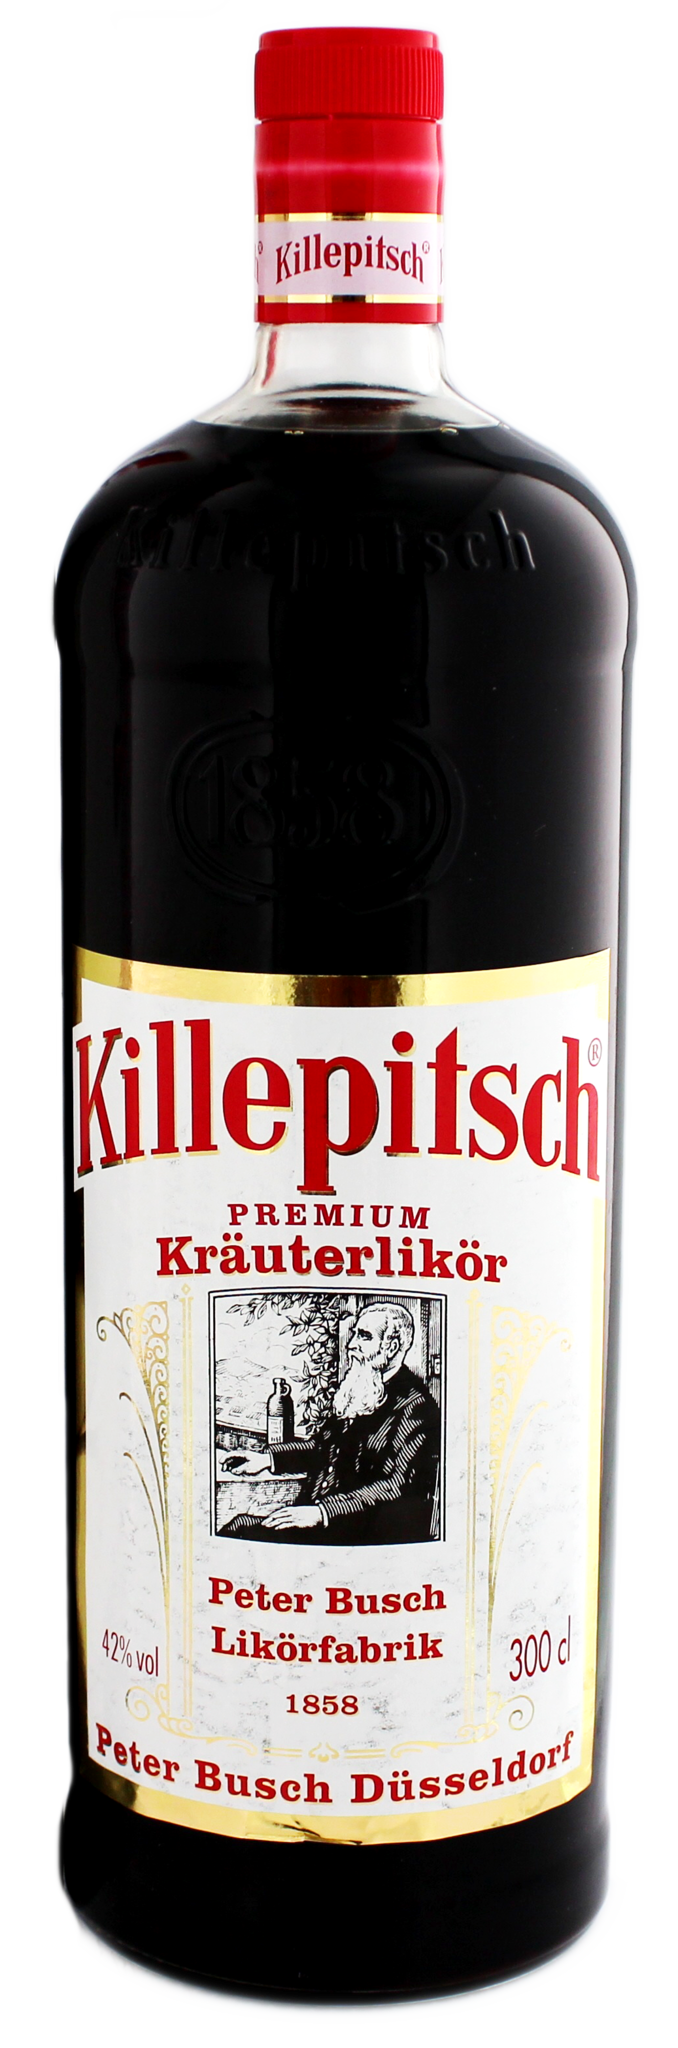 Killepitsch 3,00 ltr 42% Spirits Fine - of Whiskysite.nl World